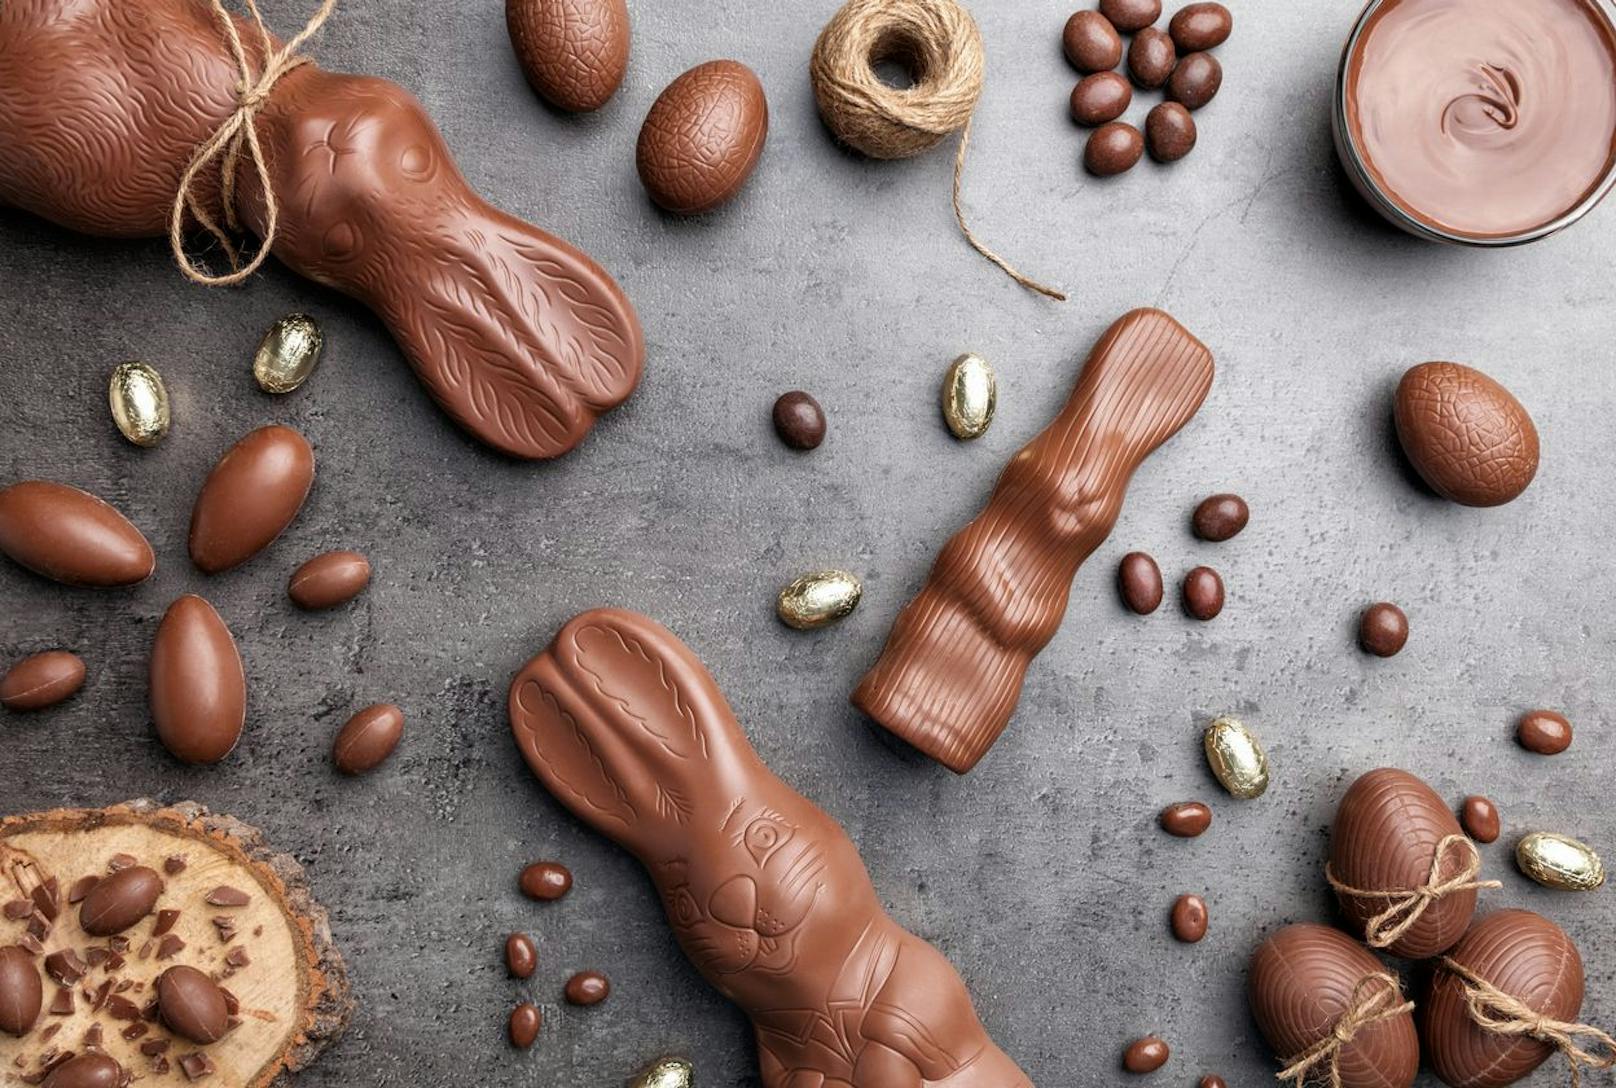 Schokolade ist zu Ostern ein Muss. Entscheide dich allerdings für Anbieter, die Bio-zertifiziert sind oder ein Fair-Trade Siegel nutzen.  